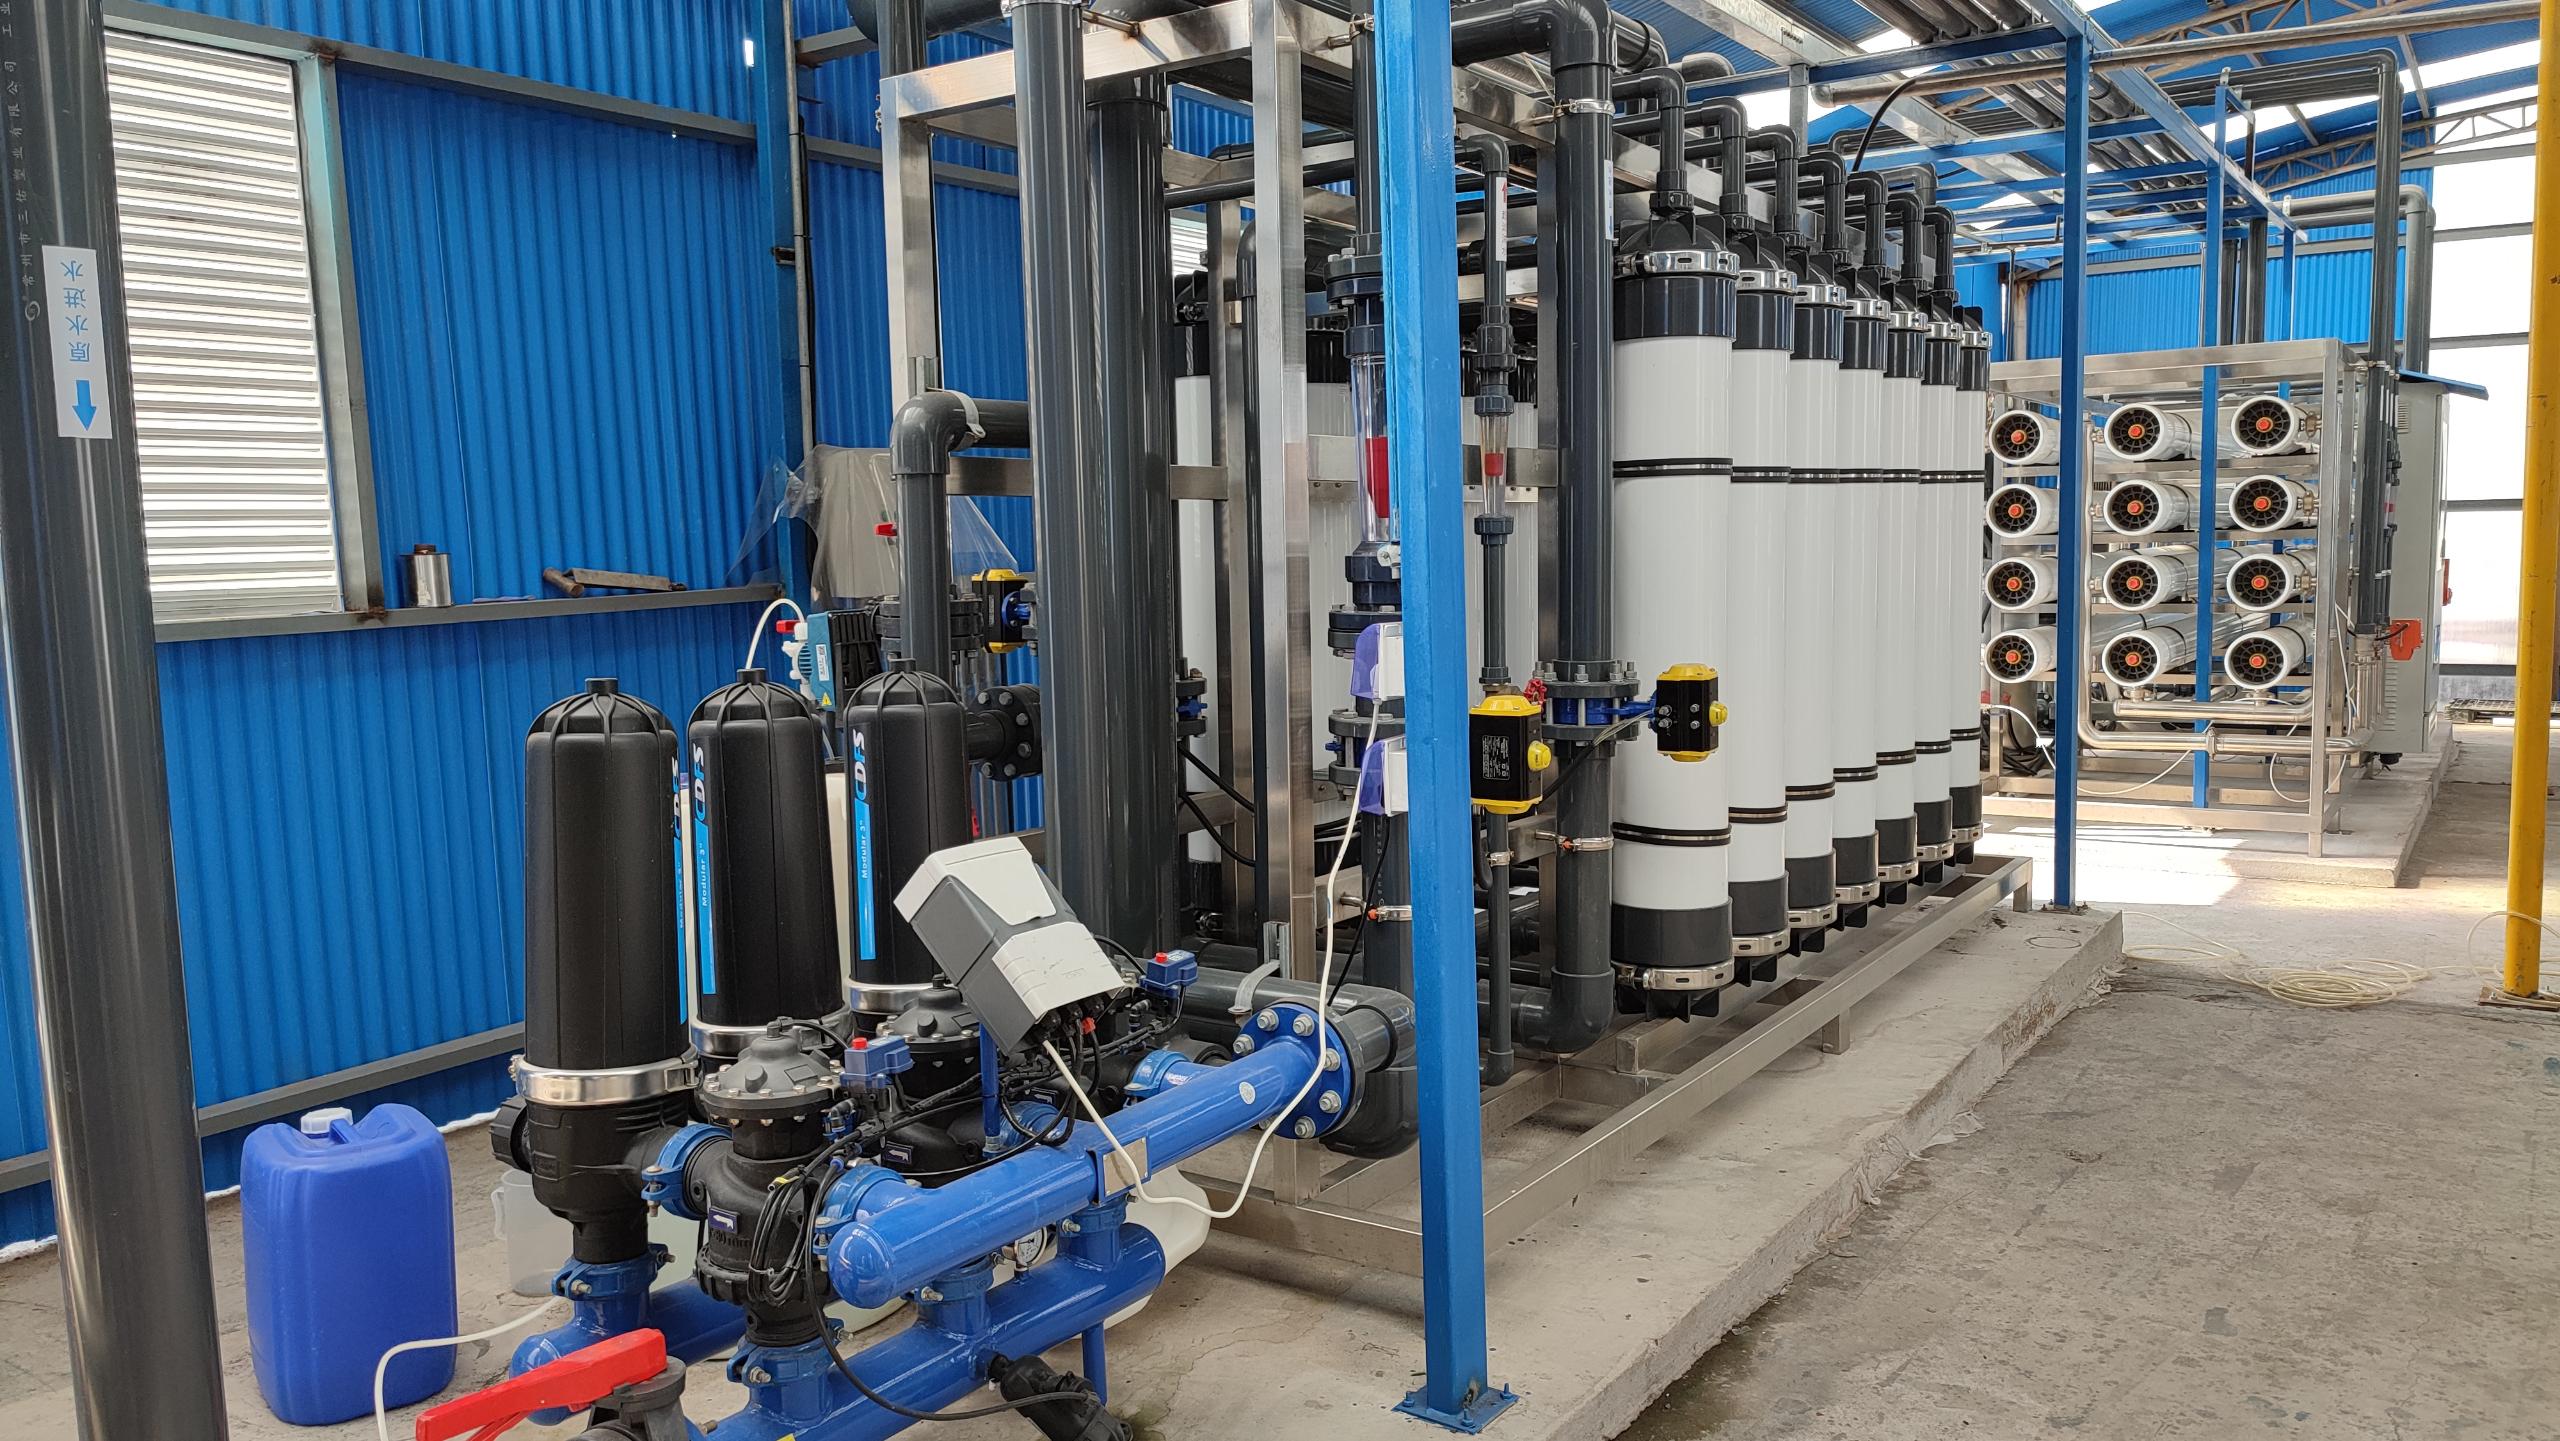 水处理设备|反渗透纯水设备|EDI工业纯水设备|超纯水设备|除铁锰过滤器|软化水设备|中水回用设备|超滤净水设备|去离子水设备|